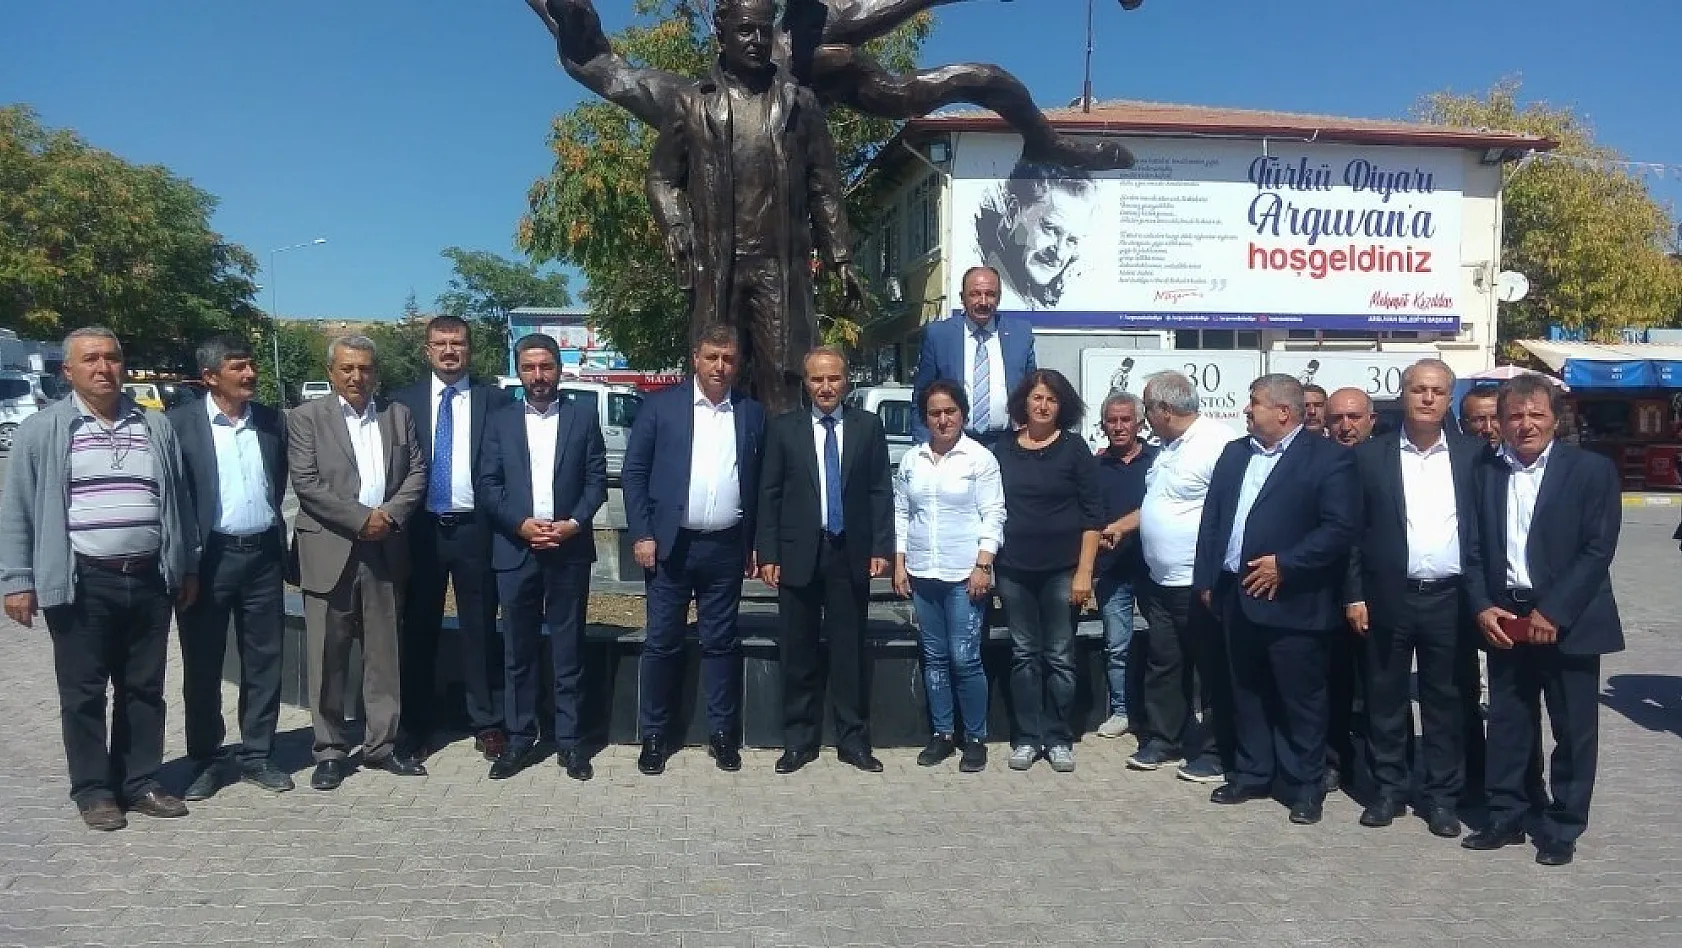 Karşıyaka Belediyesi Başkanı Tugay'dan Arguvan Belediyesine ziyaret 